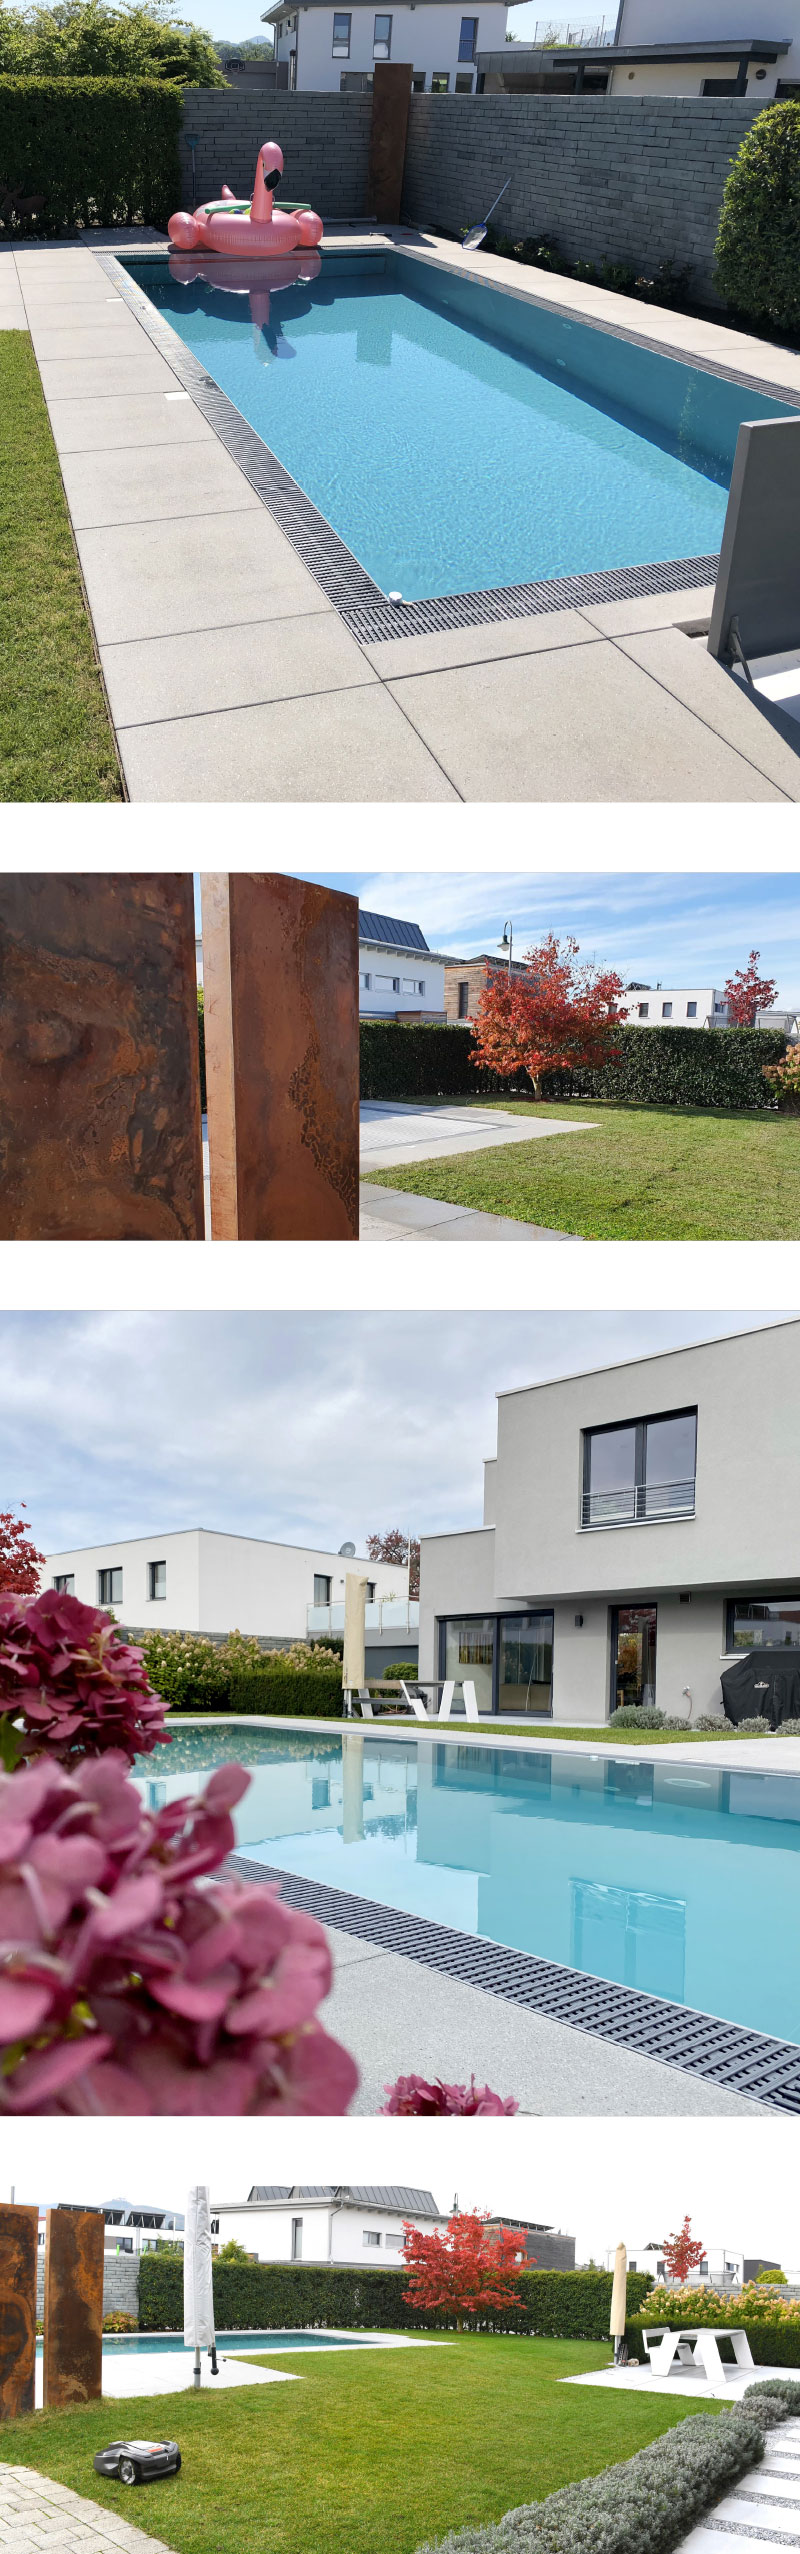 Beispiel Mauerarbeiten, Terassenbelag, Bepflanzung und Poolbau von Schlegel Garten- und Poolbau aus Kirchheim Teck